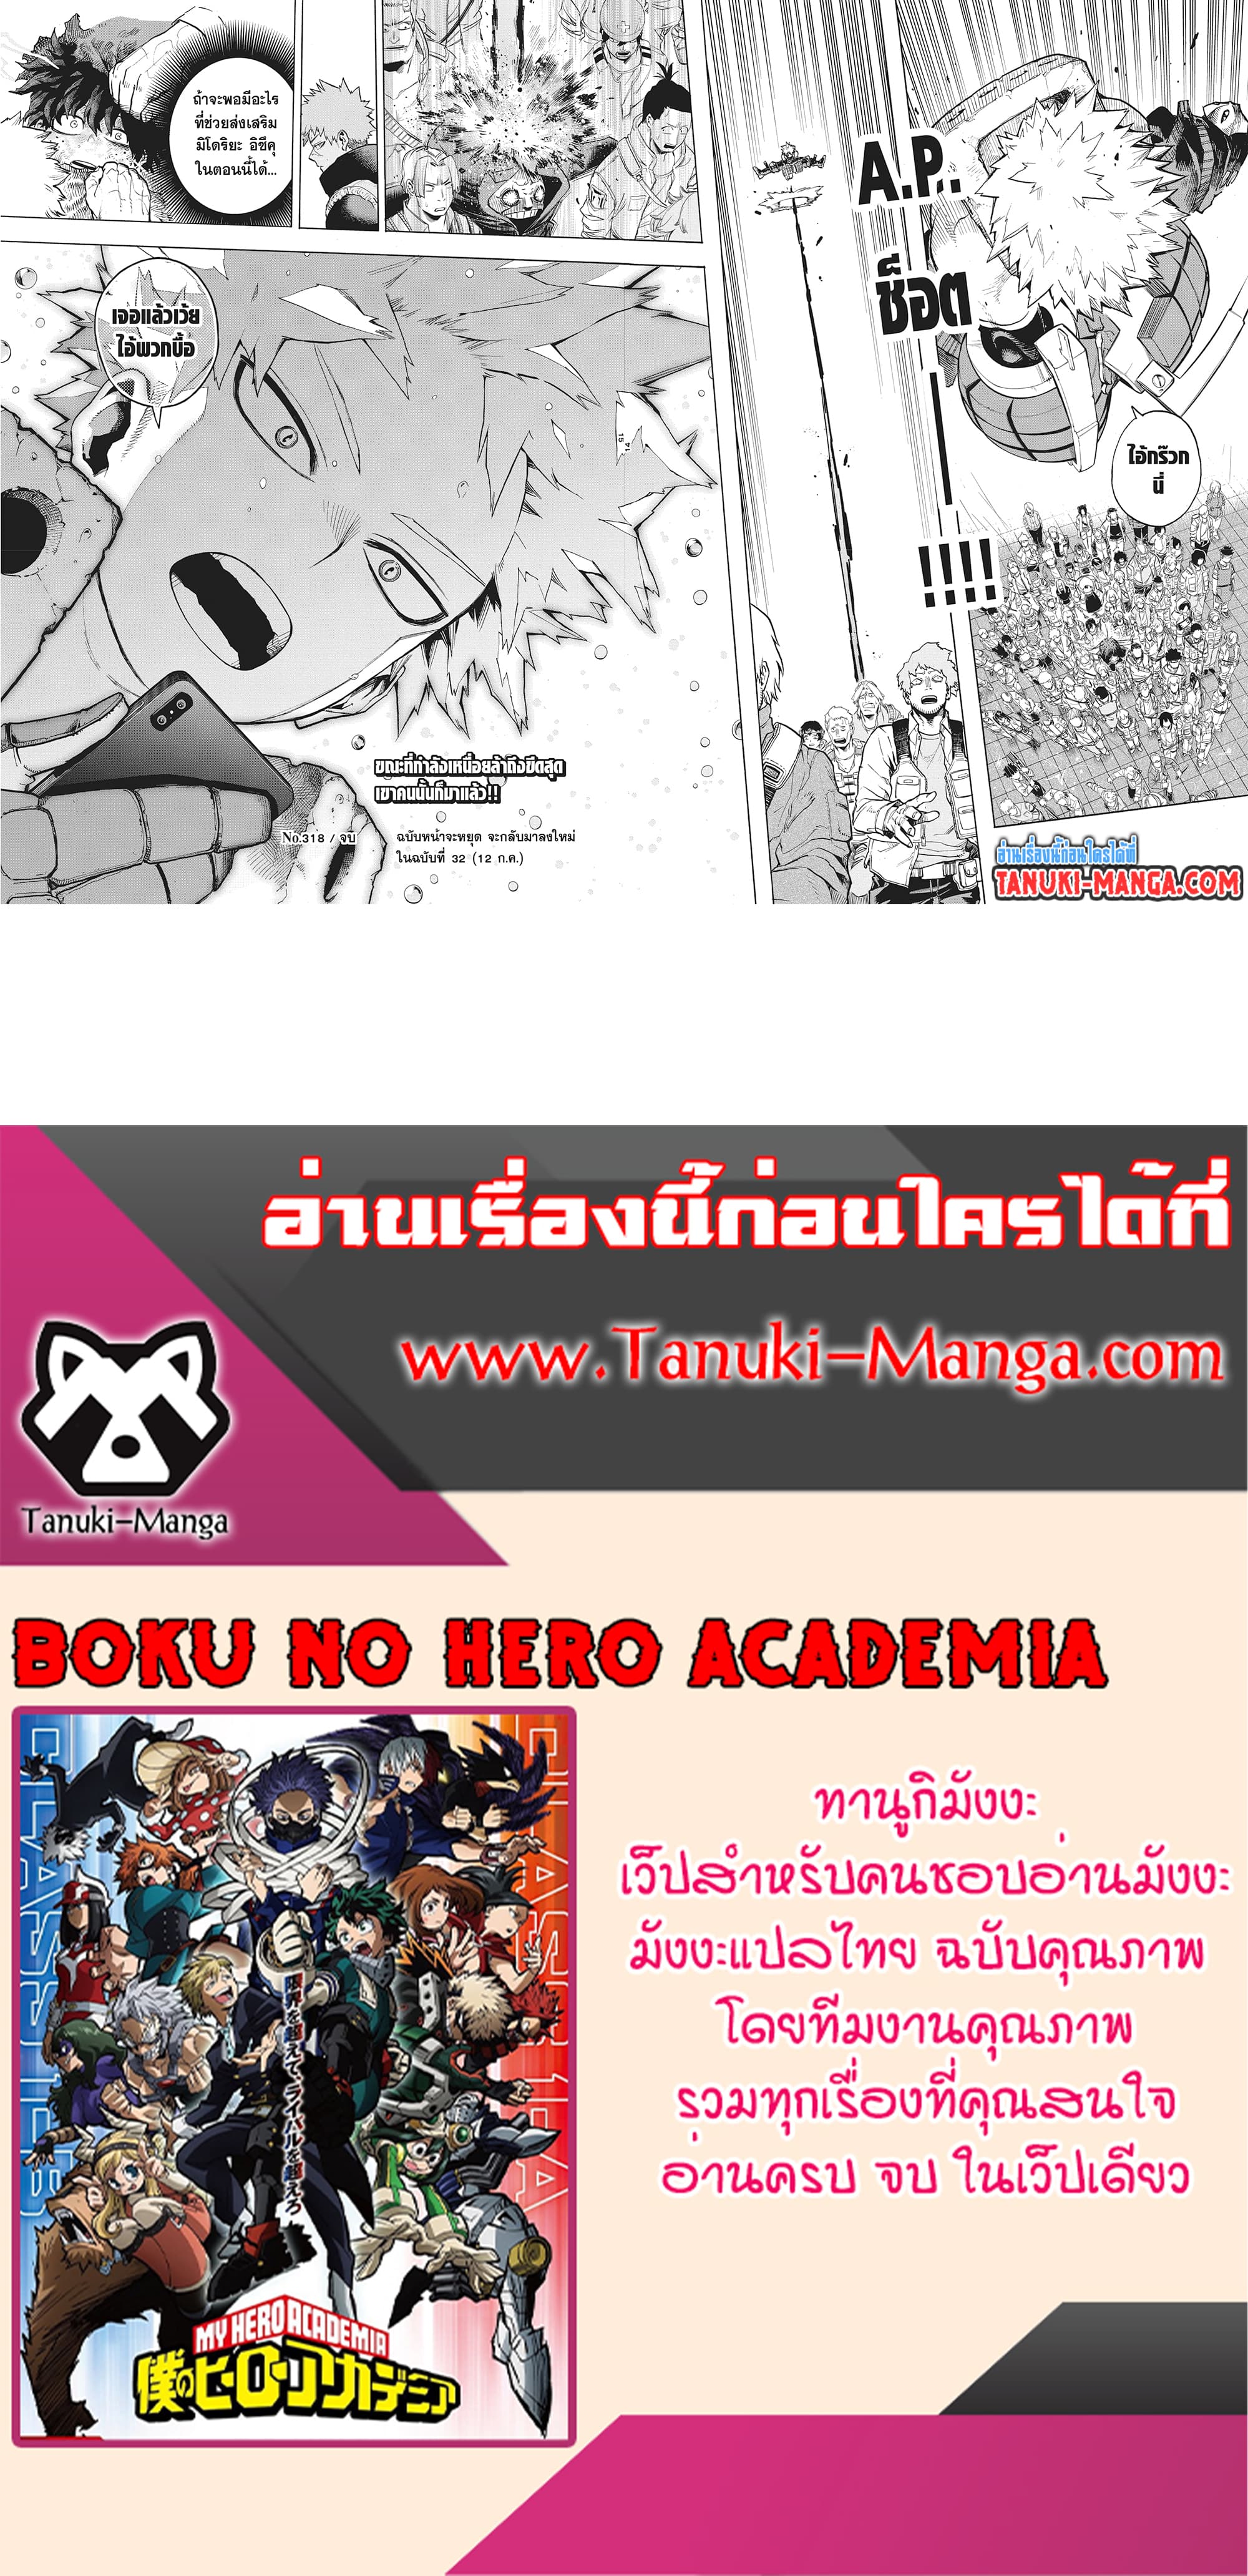 Boku no Hero Academia (My Hero Academia) 318 (2)